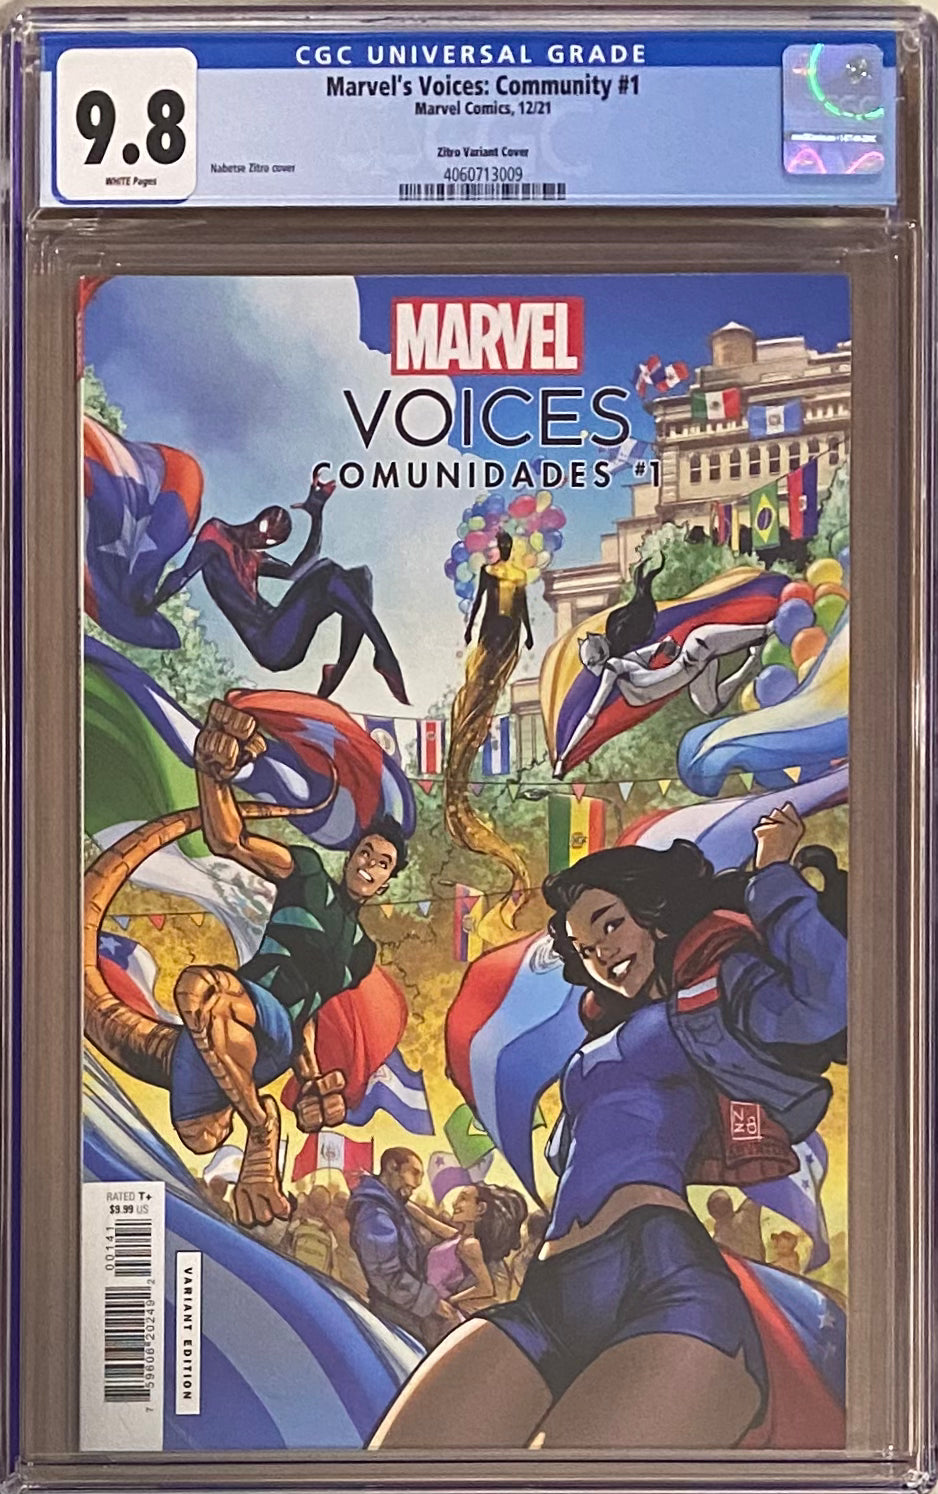 Marvel Voices: Community #1 Zitro Variant CGC 9.8